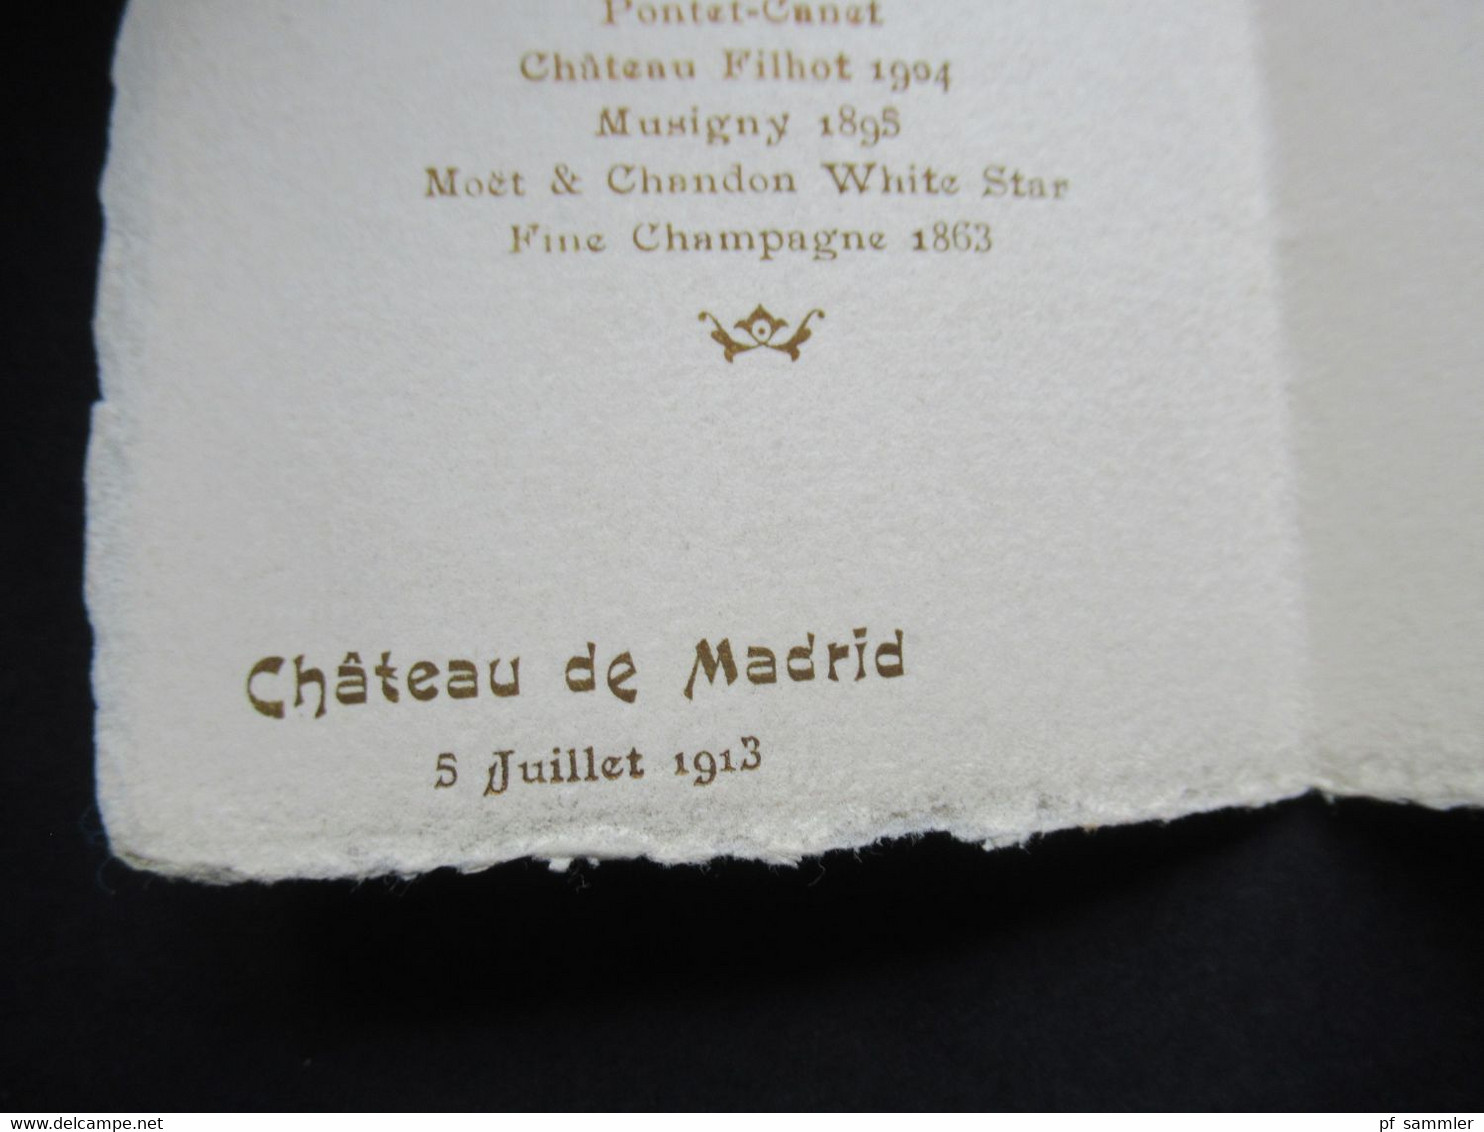 Frankreich 1863 - 1913 Einladungskarte Menu du diner Chateau de Madrid Spreisekarte / Weinkarte Moet & Chandon 1863